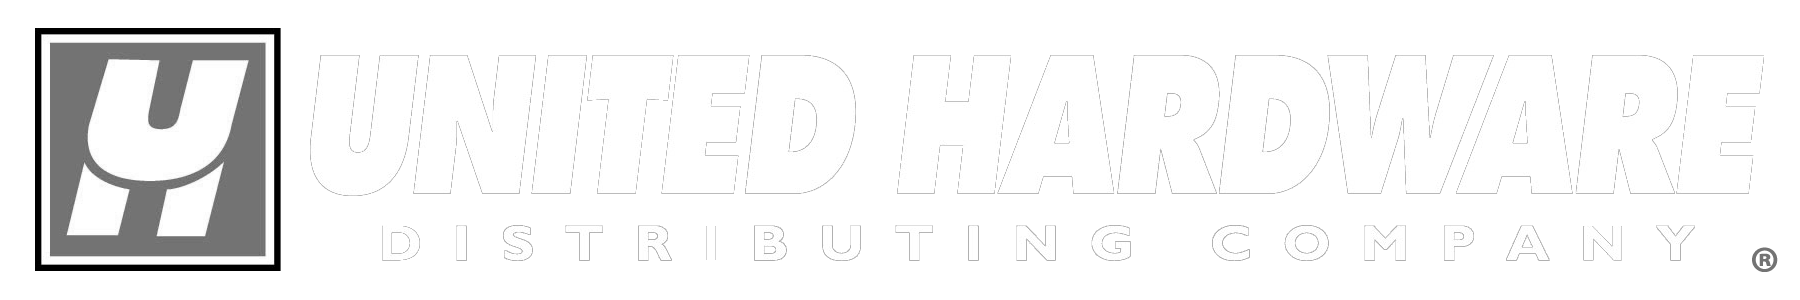 United Hardware logo